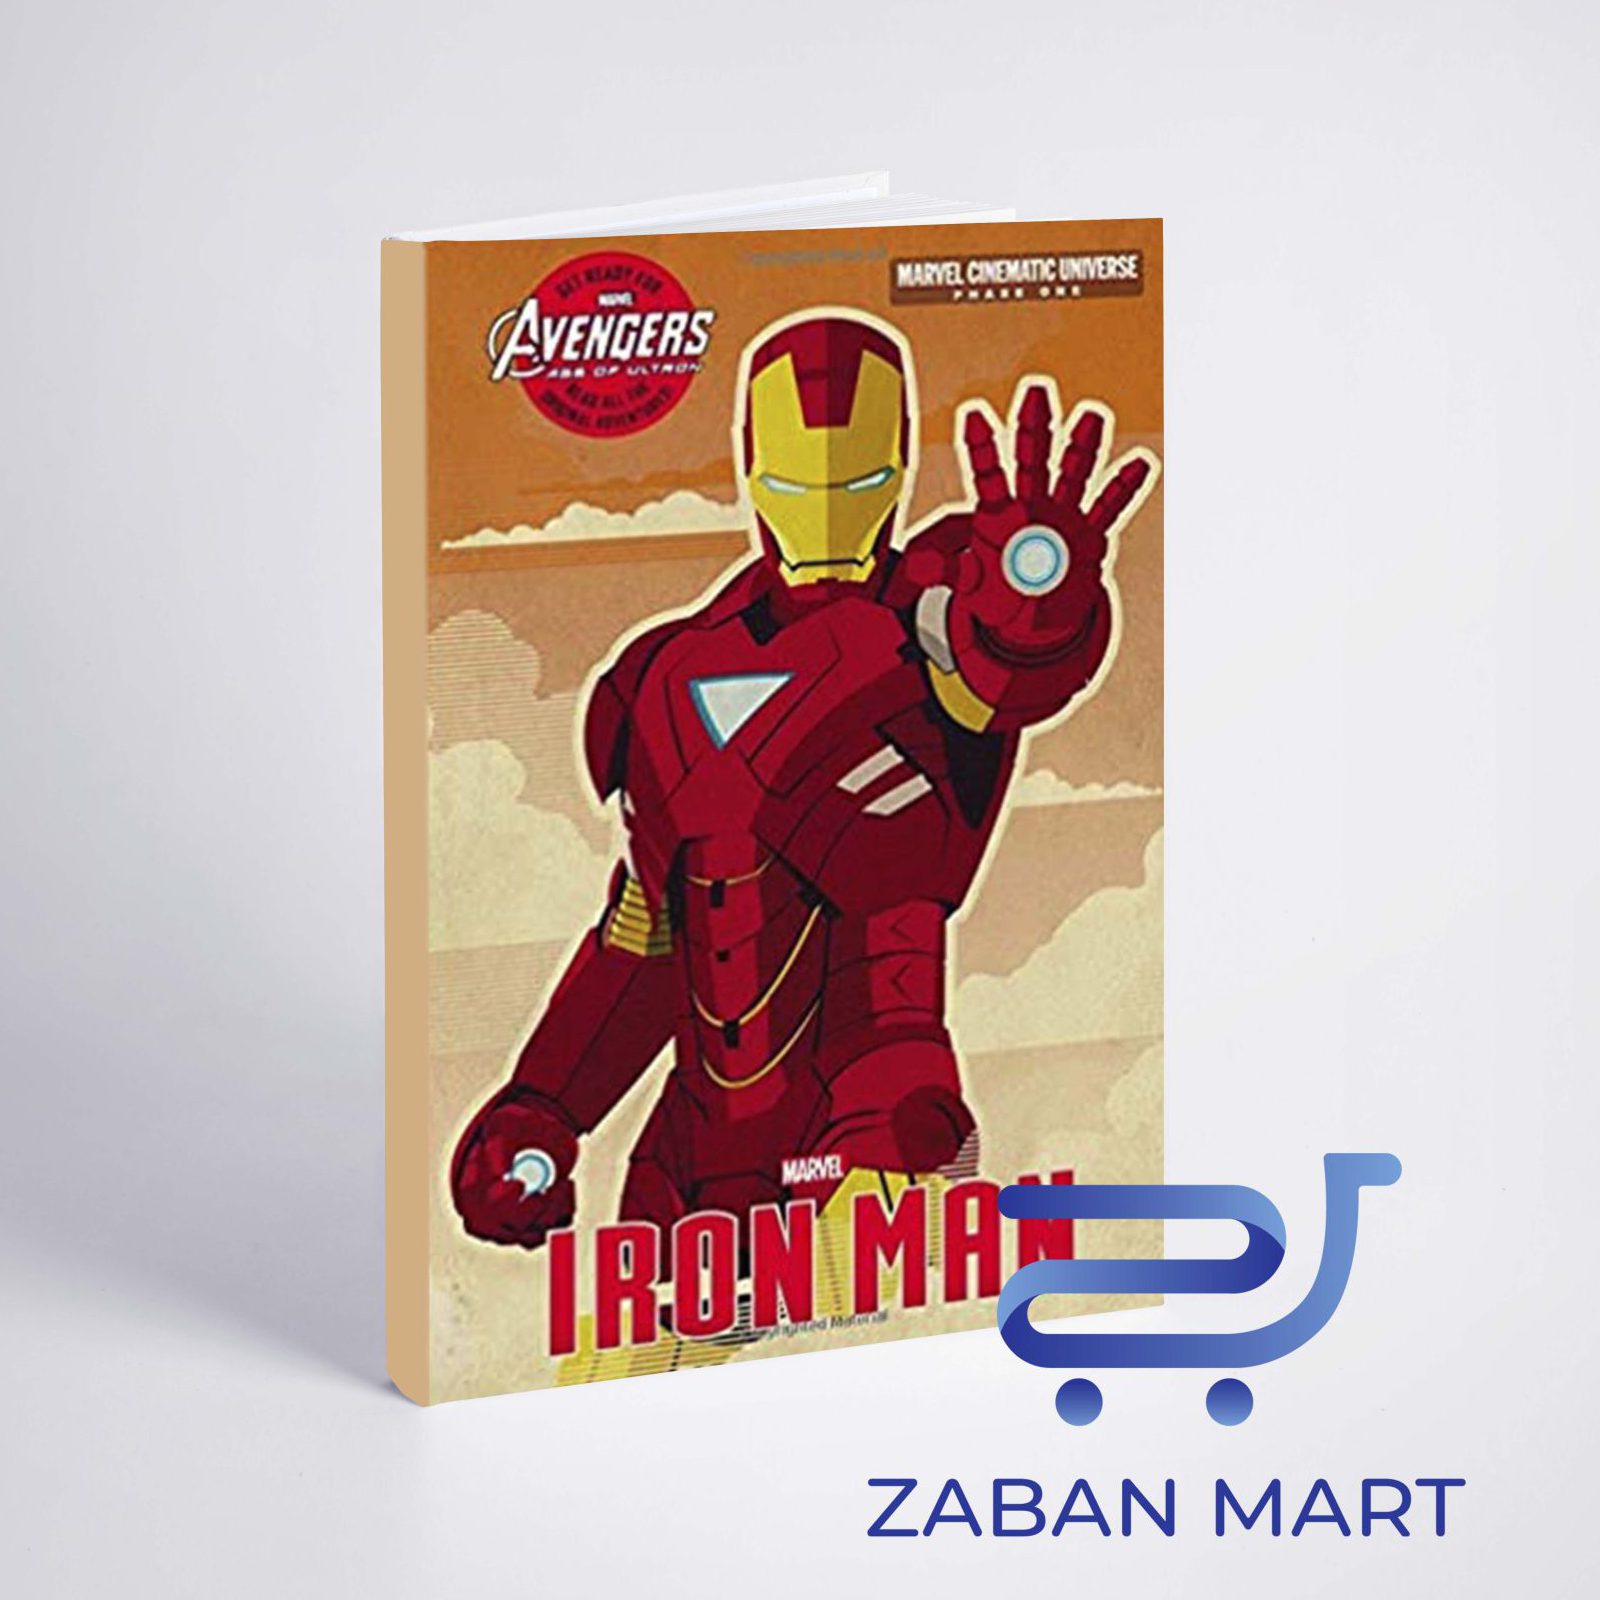 خرید کتاب فاز یک ( آیرون من ) | Phase One: Iron Man از فروشگاه زبان مارت 